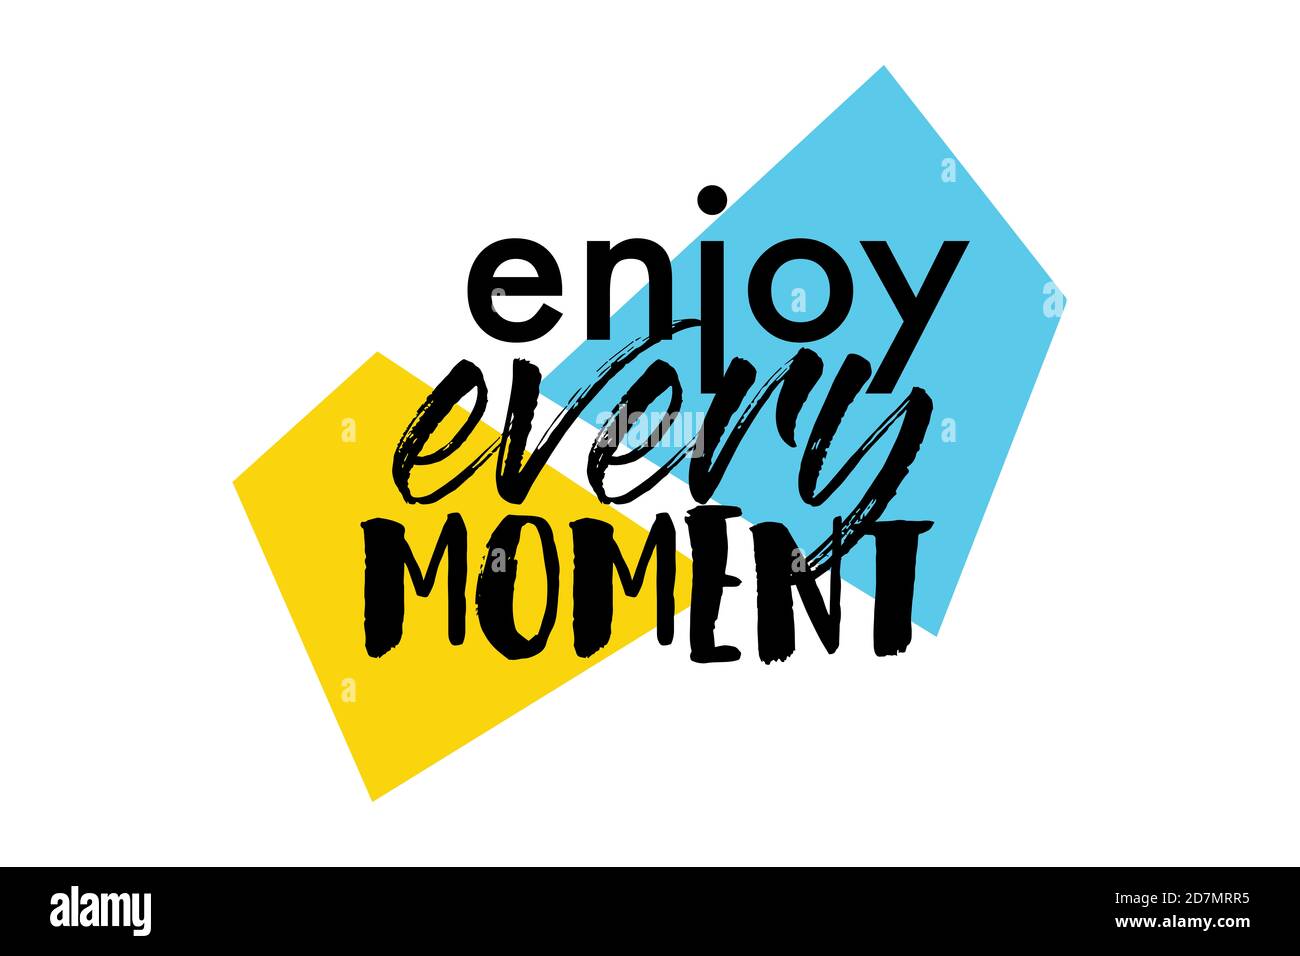 Modernes, verspieltes Grafikdesign mit dem Sprichwort "Enjoy every Moment" mit trapezförmigen geometrischen Formen in Gelb, Blau und Schwarz. Urbane Typografie. Stockfoto